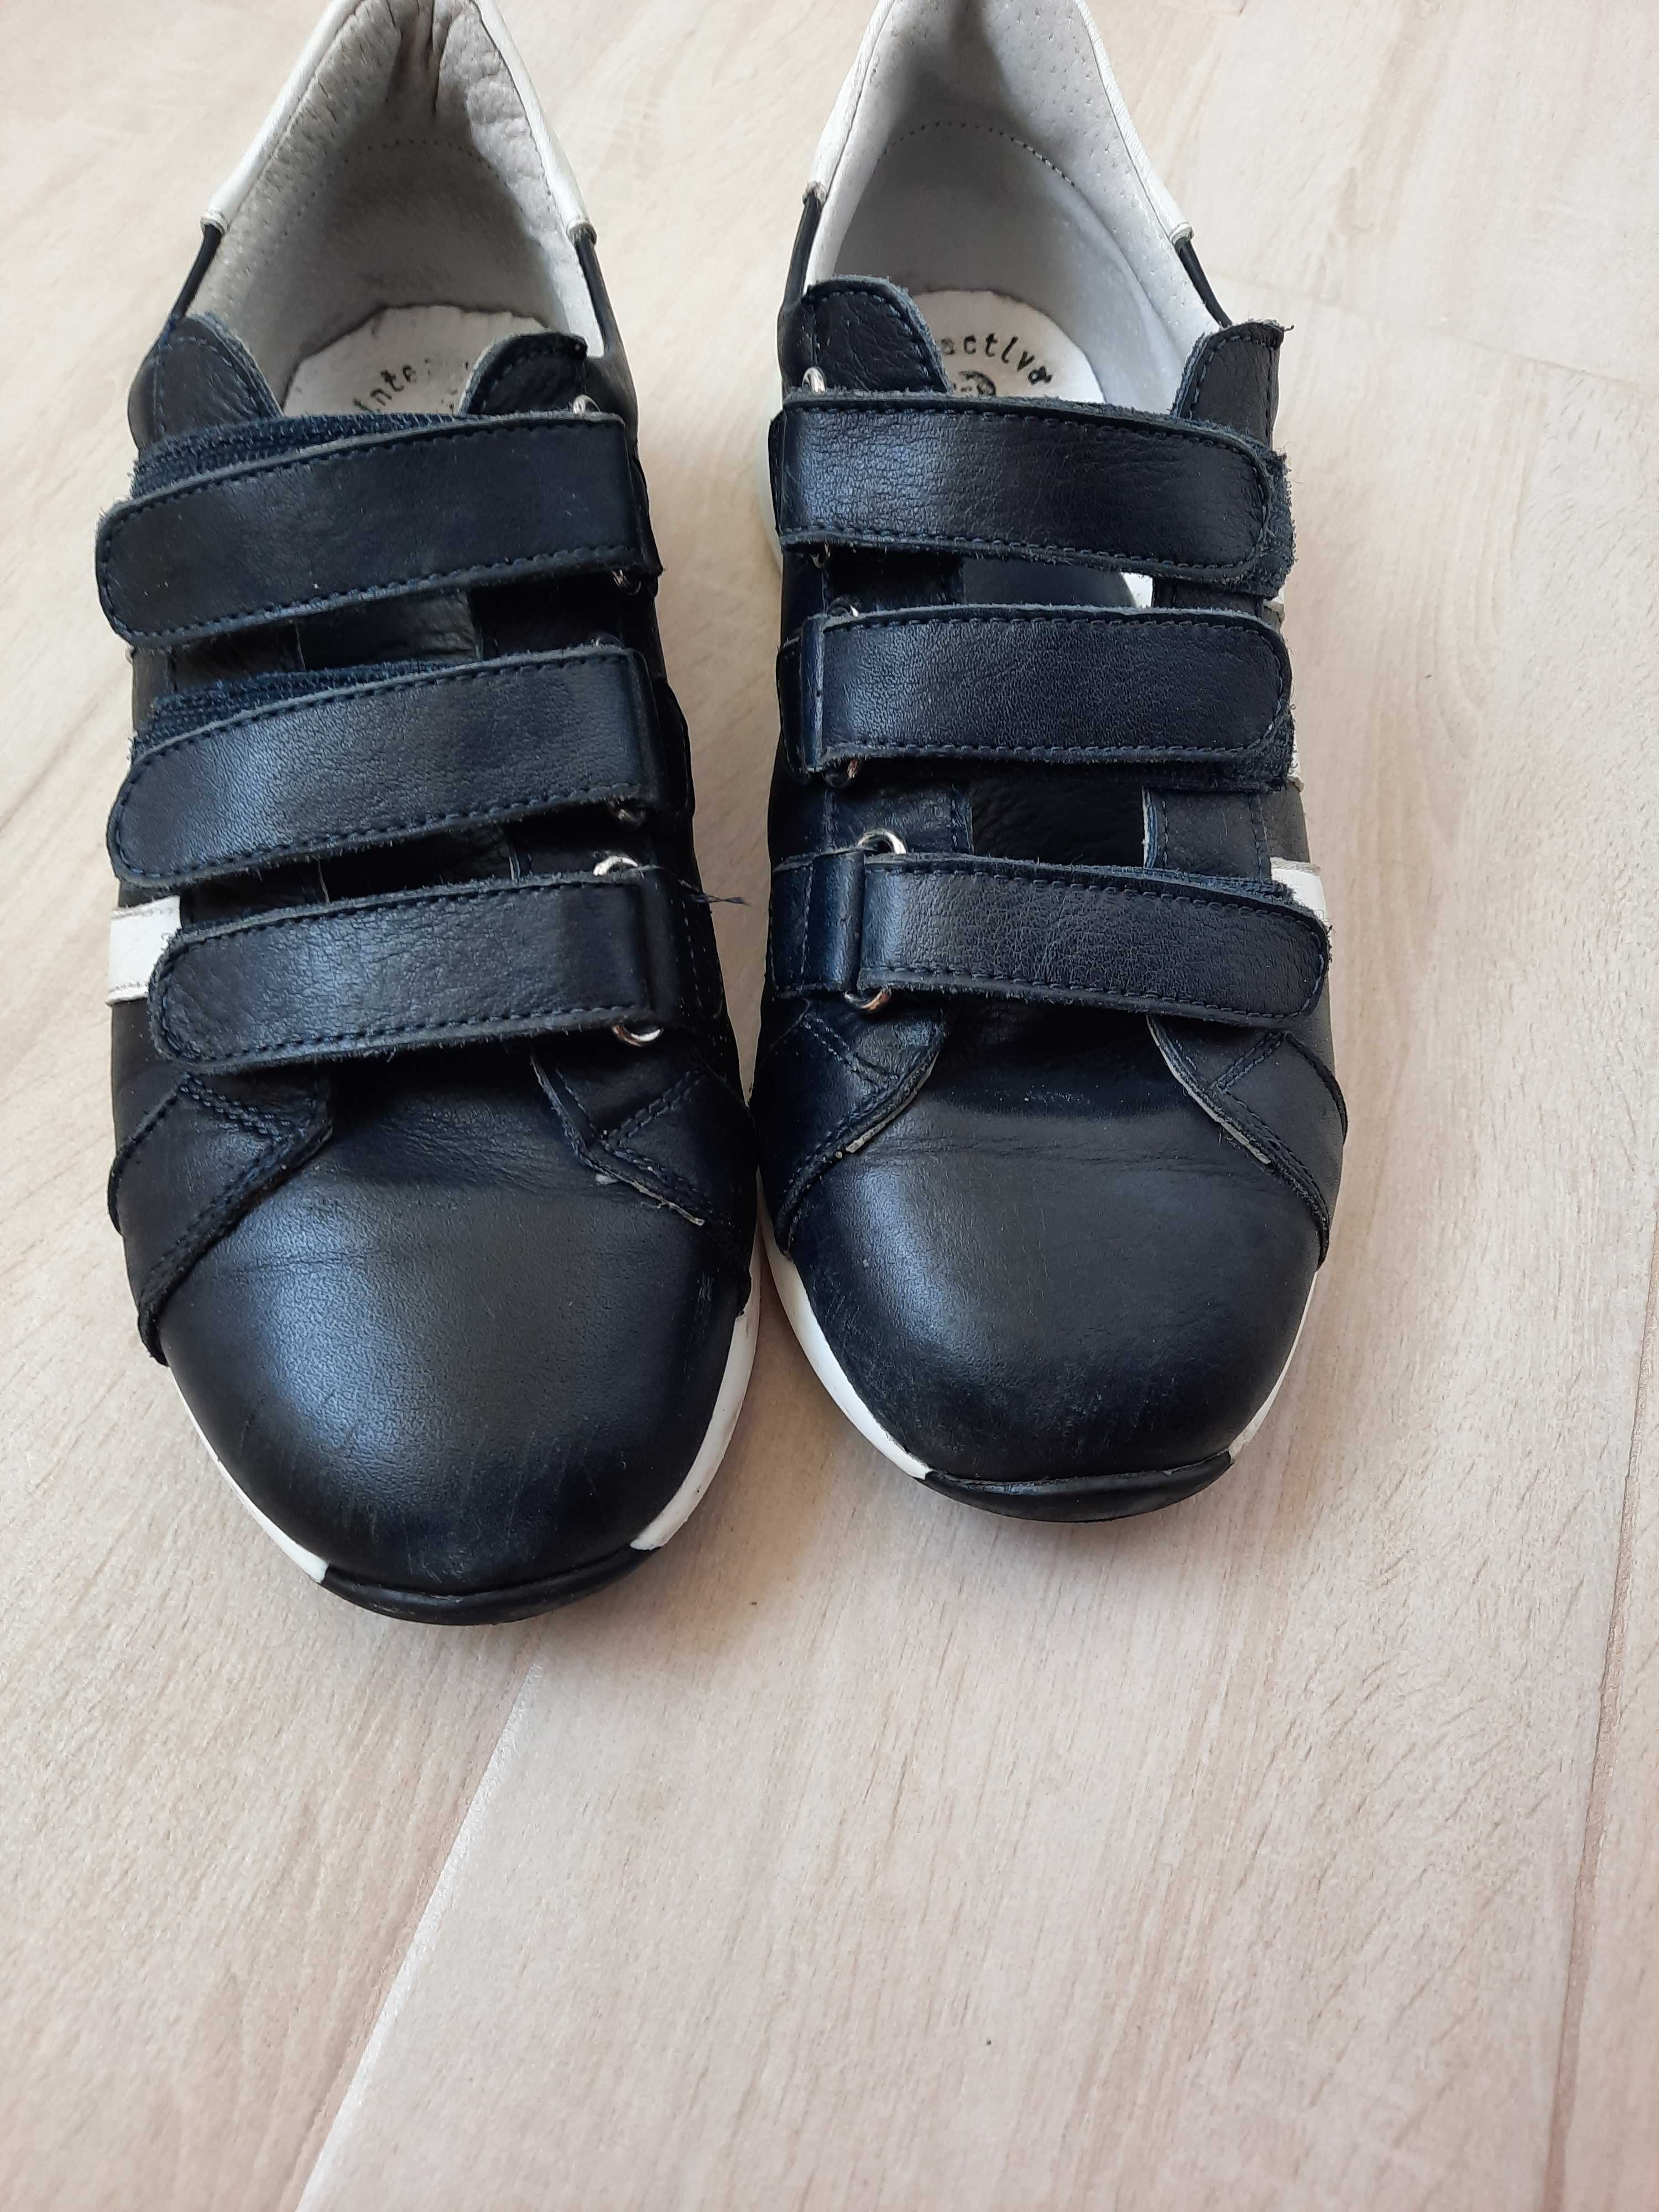 Pantofi sport baieti M 39